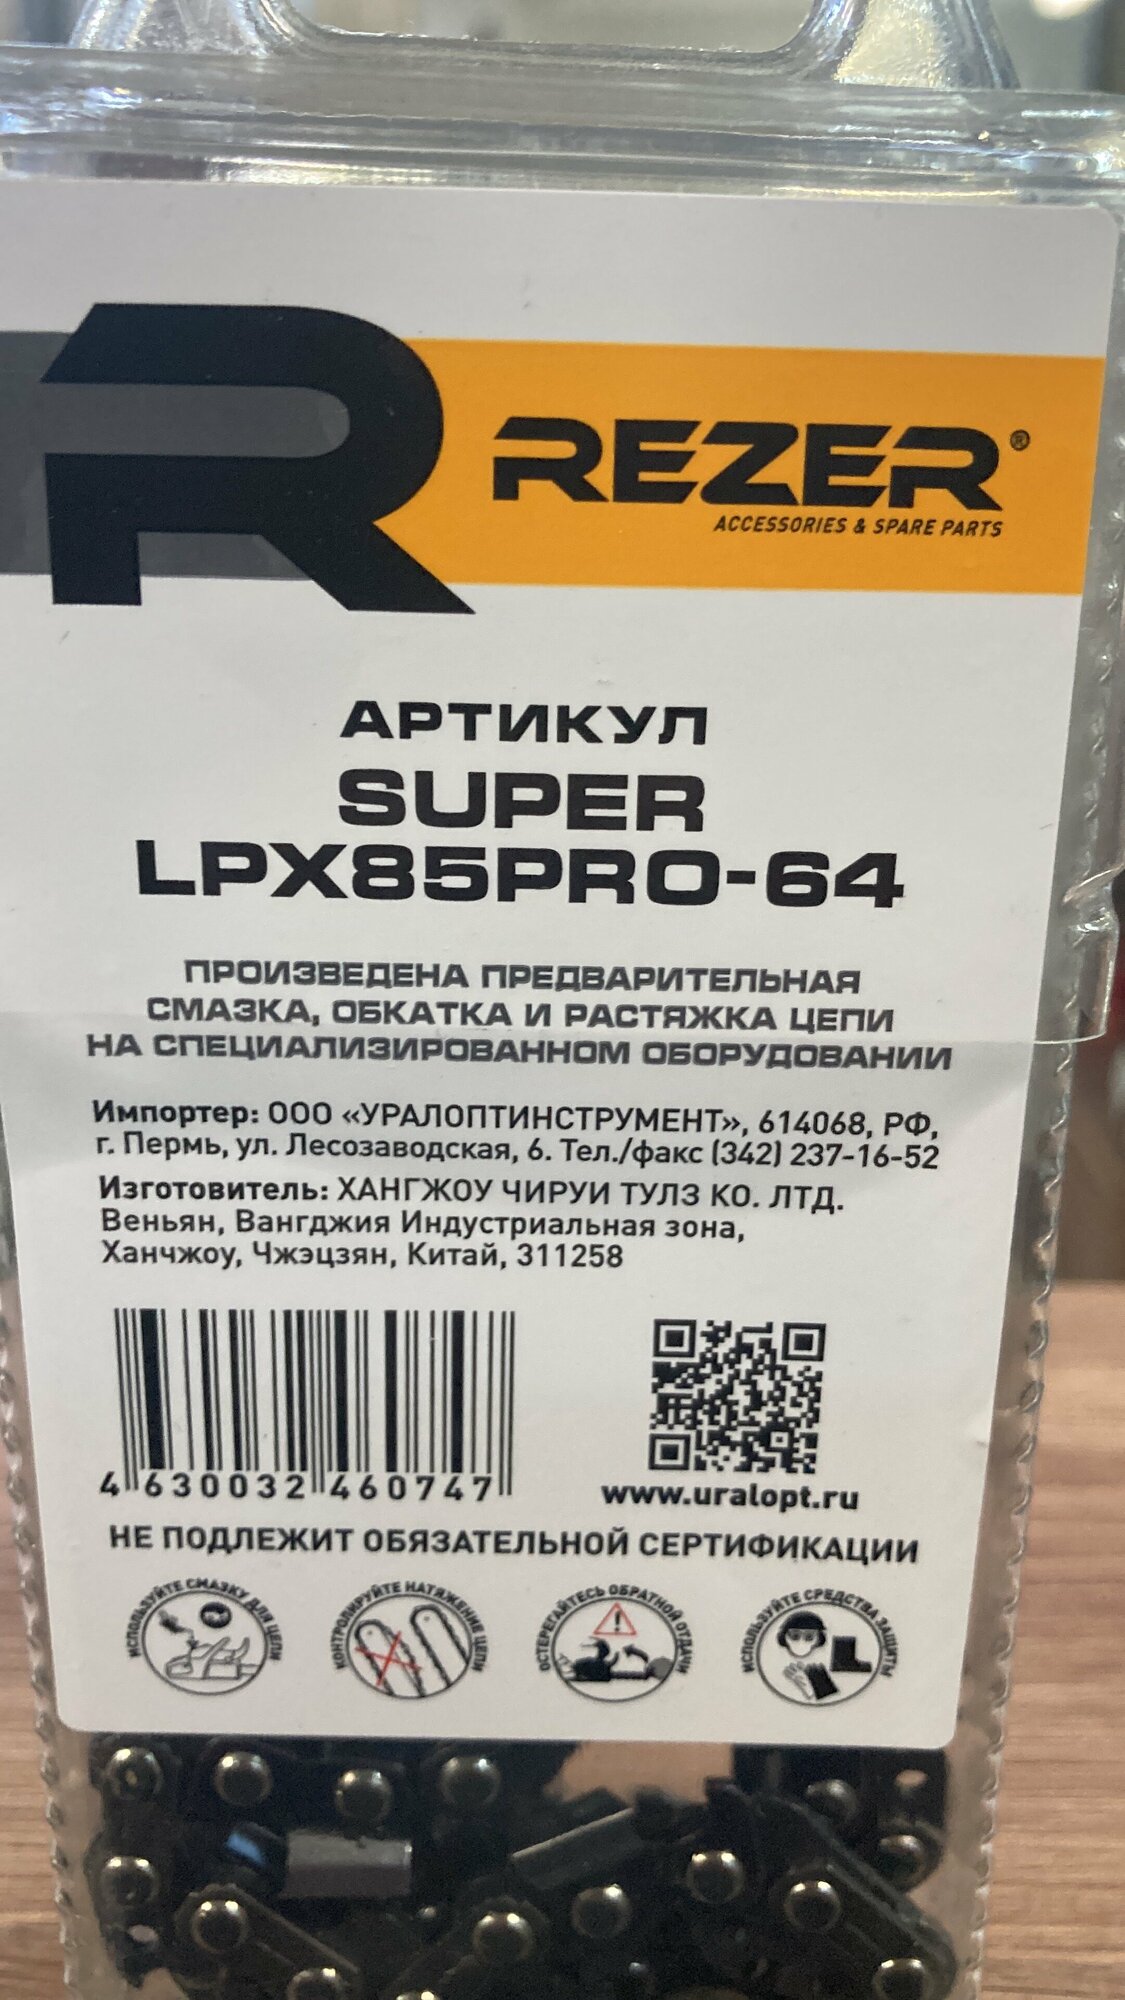 Цепь Rezer Super LPX85 Pro-64 15"-325"-1.5-64 звена  03.025.00021